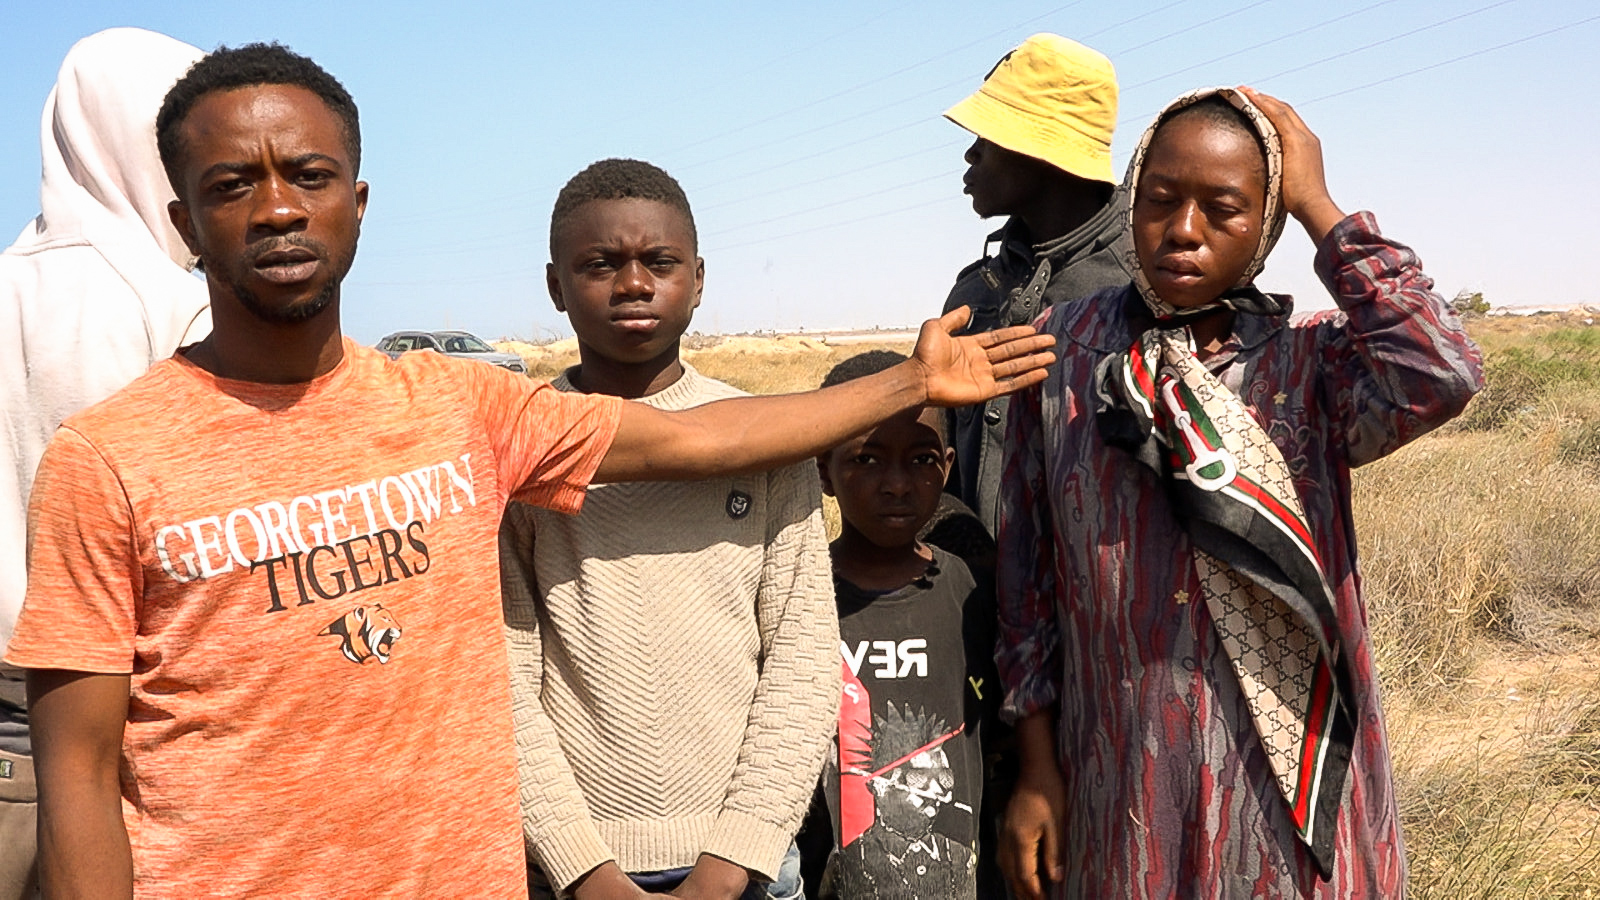 Μετανάστες: Εγκατέλειψαν δεκάδες άτομα από την υποσαχάρια Αφρική στην έρημο, ανάμεσά τους και μωρά - Πώς σώθηκαν